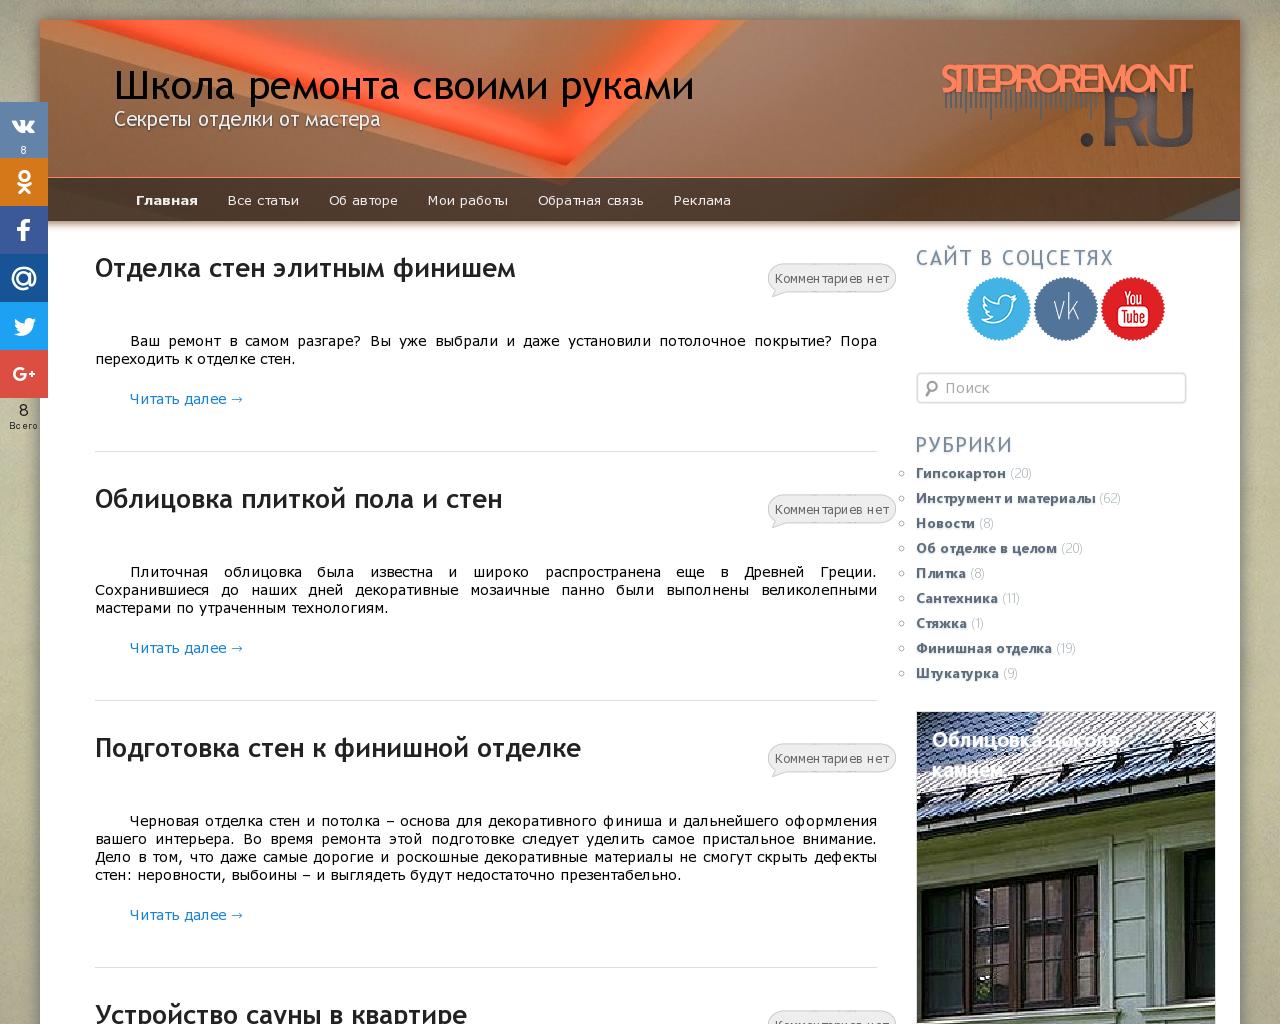 Изображение сайта siteproremont.ru в разрешении 1280x1024